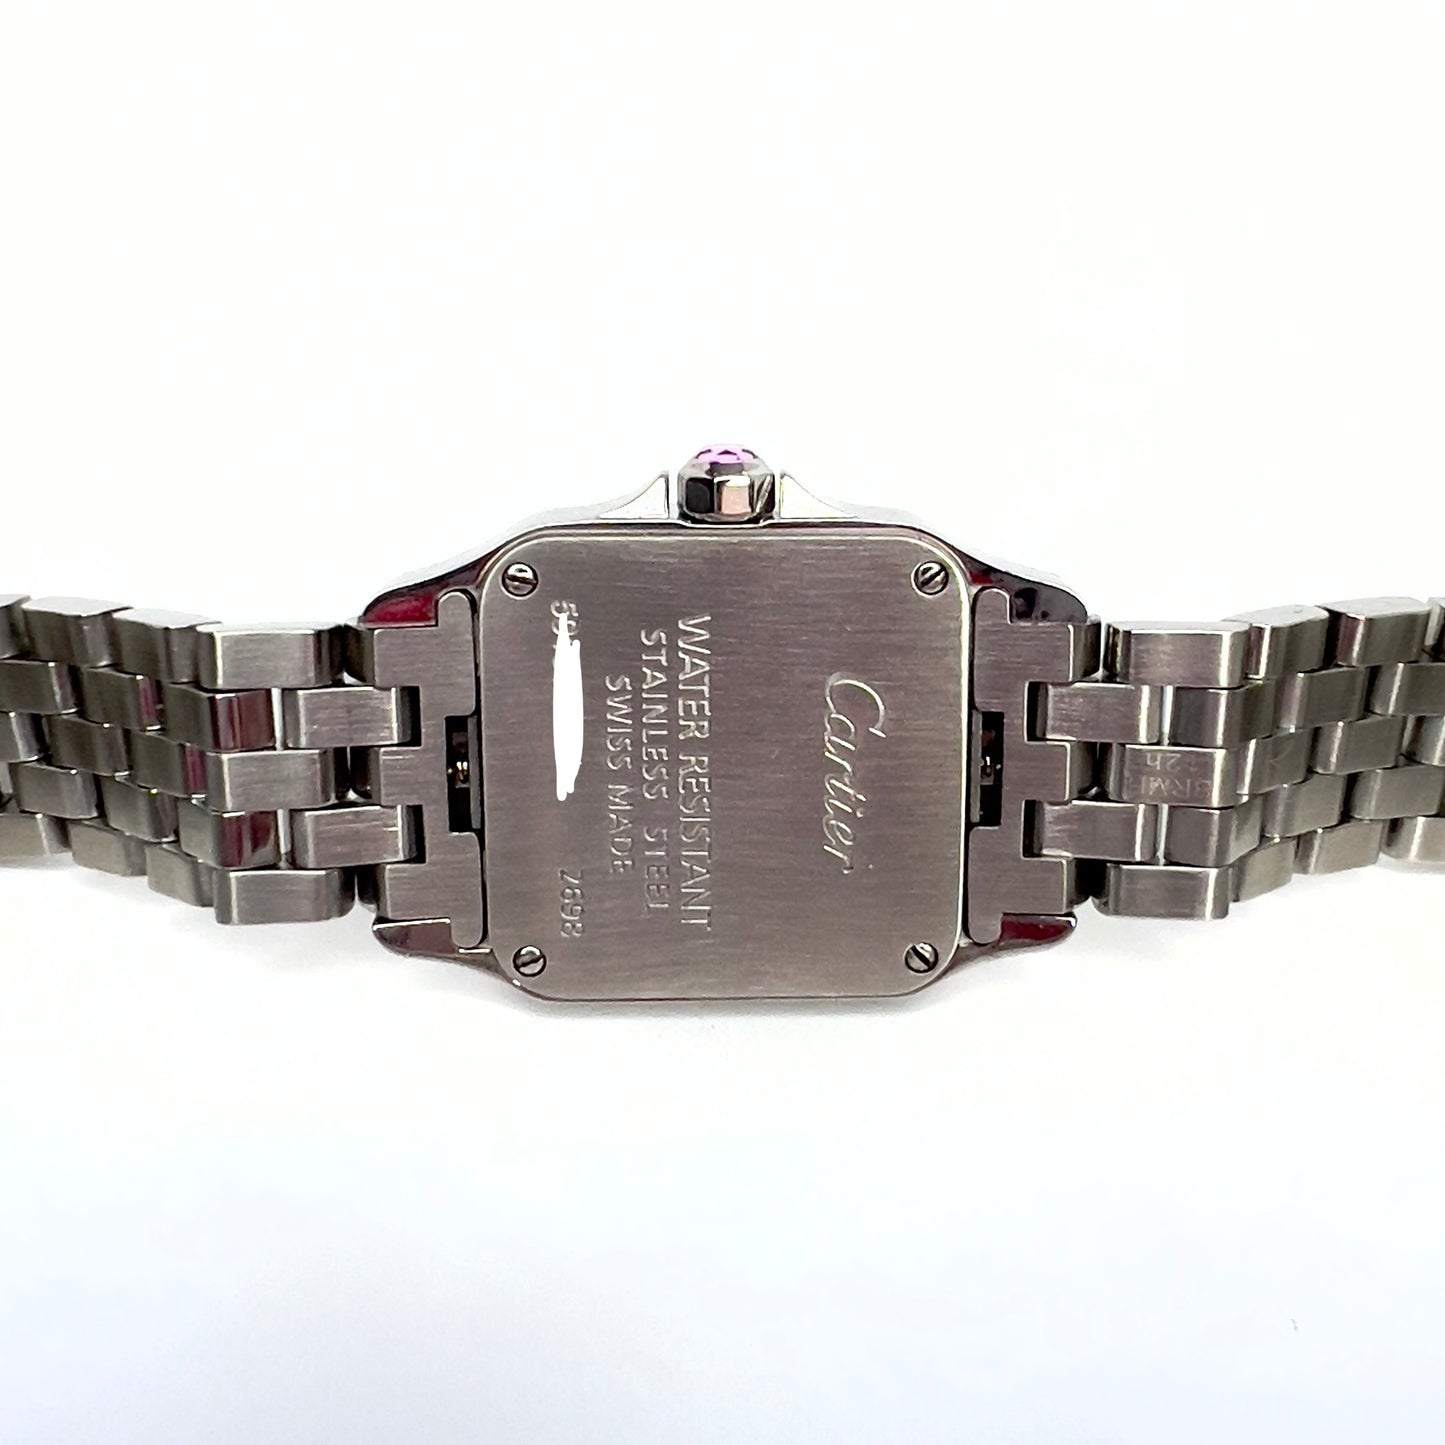 CARTIER SANTOS DEMOISELLE Steel 20mm Watch ~0.7TCW DIAMONDS